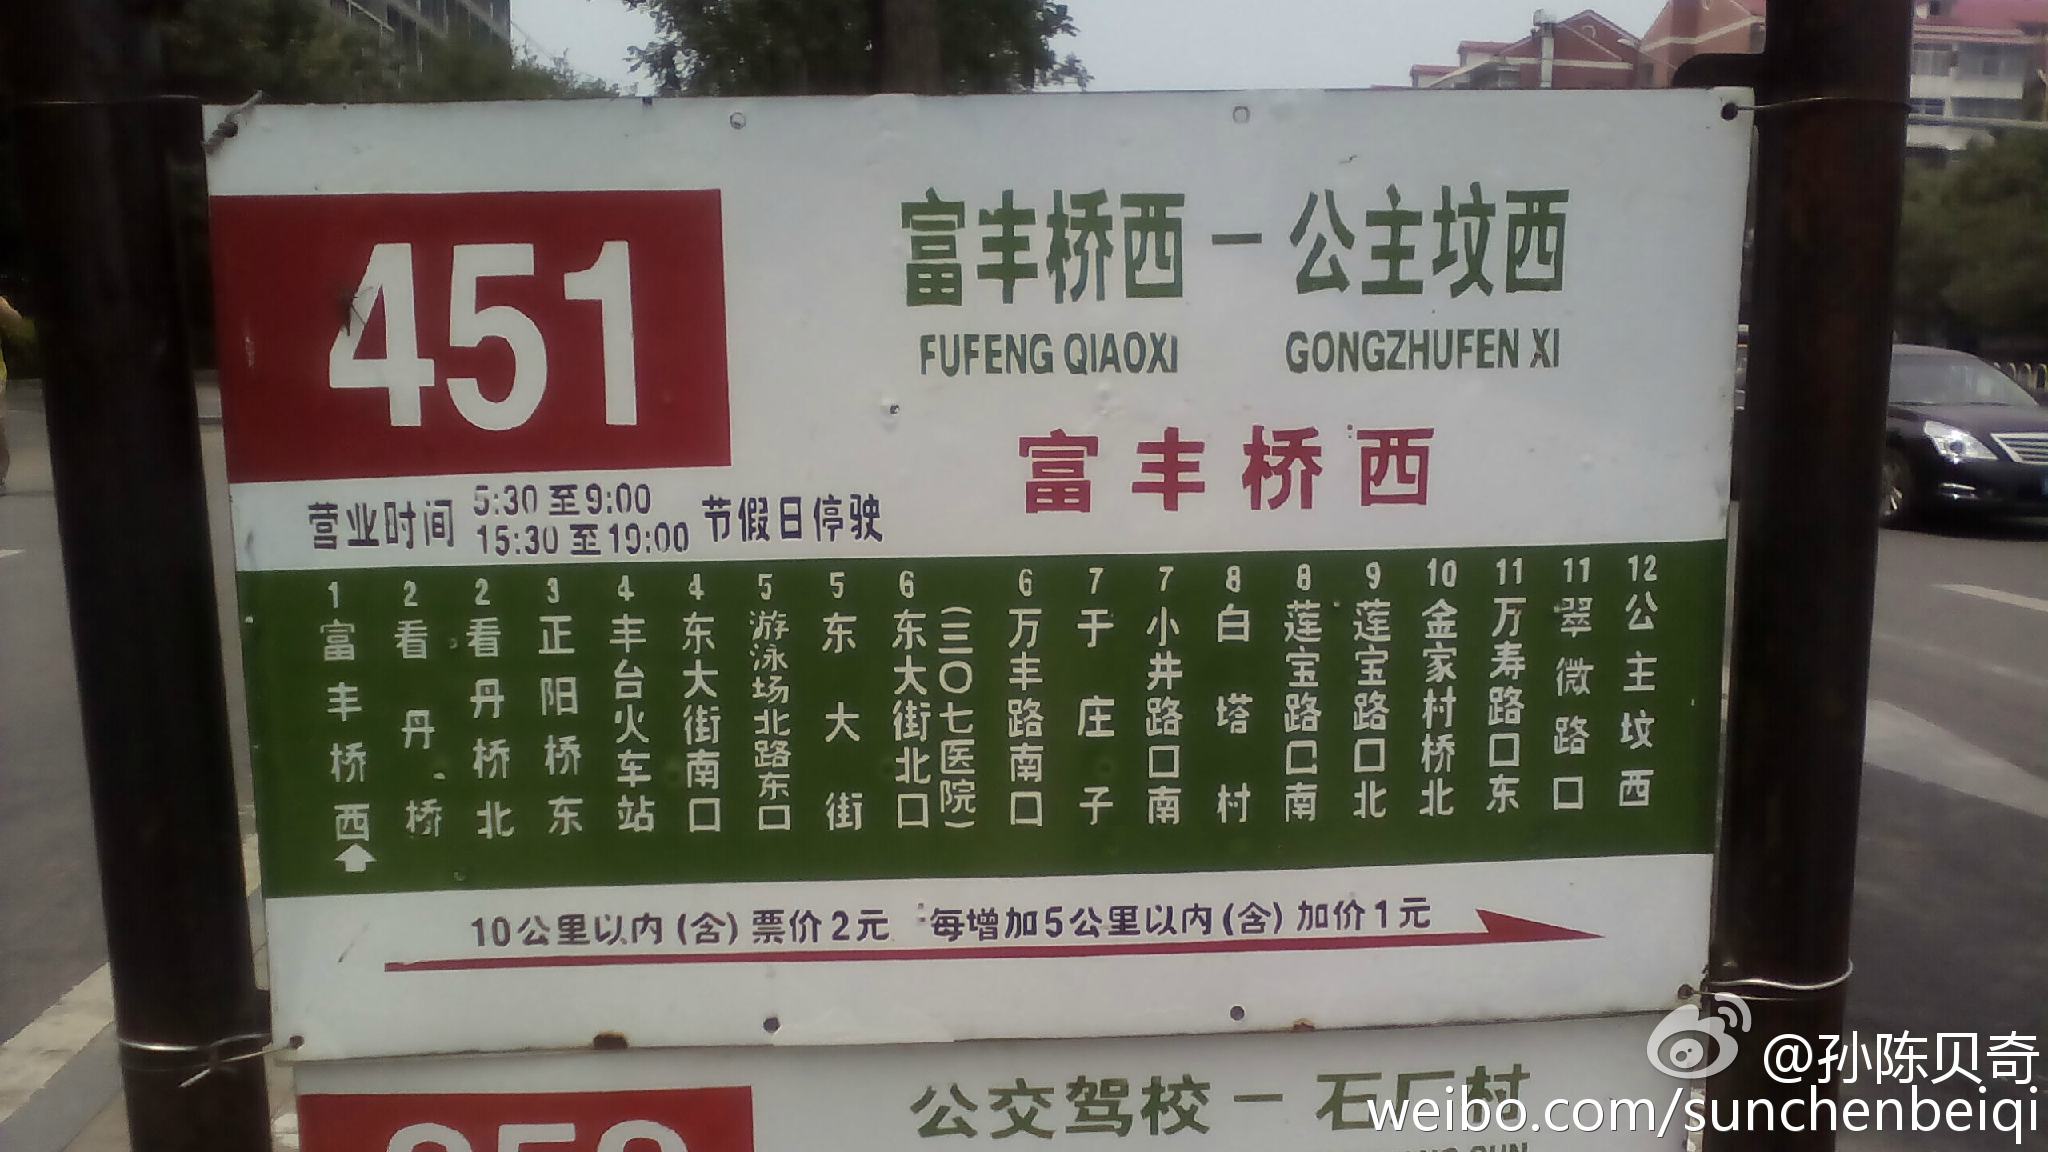 北京公交451路絕版站牌